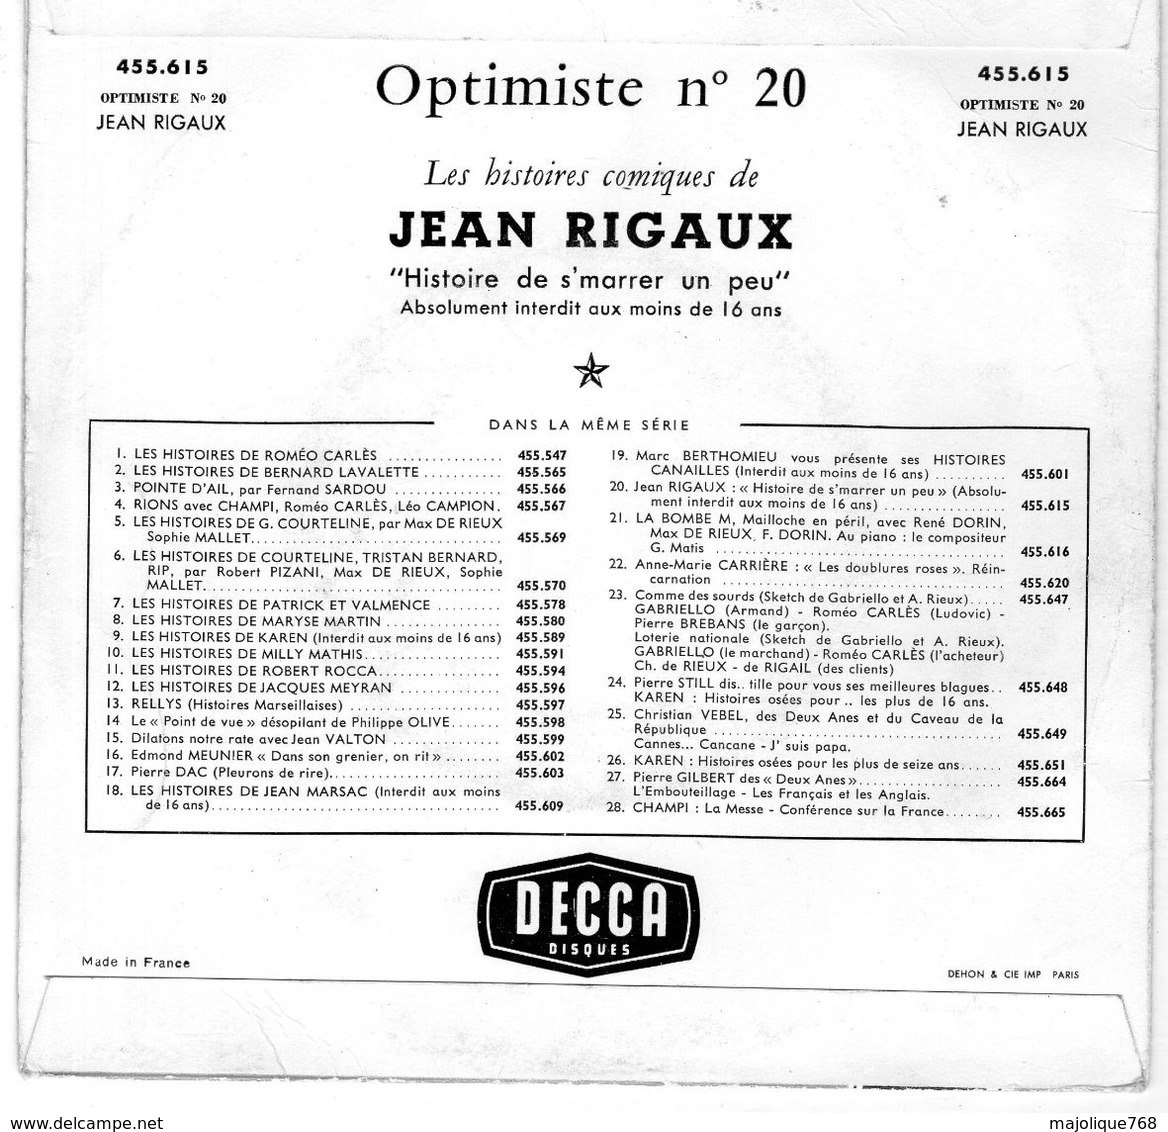 Disque - Jean Rigaux Optimiste N°20 - Histoire De S'marrer Un Peu - DECCA 455.615 - - Comiche